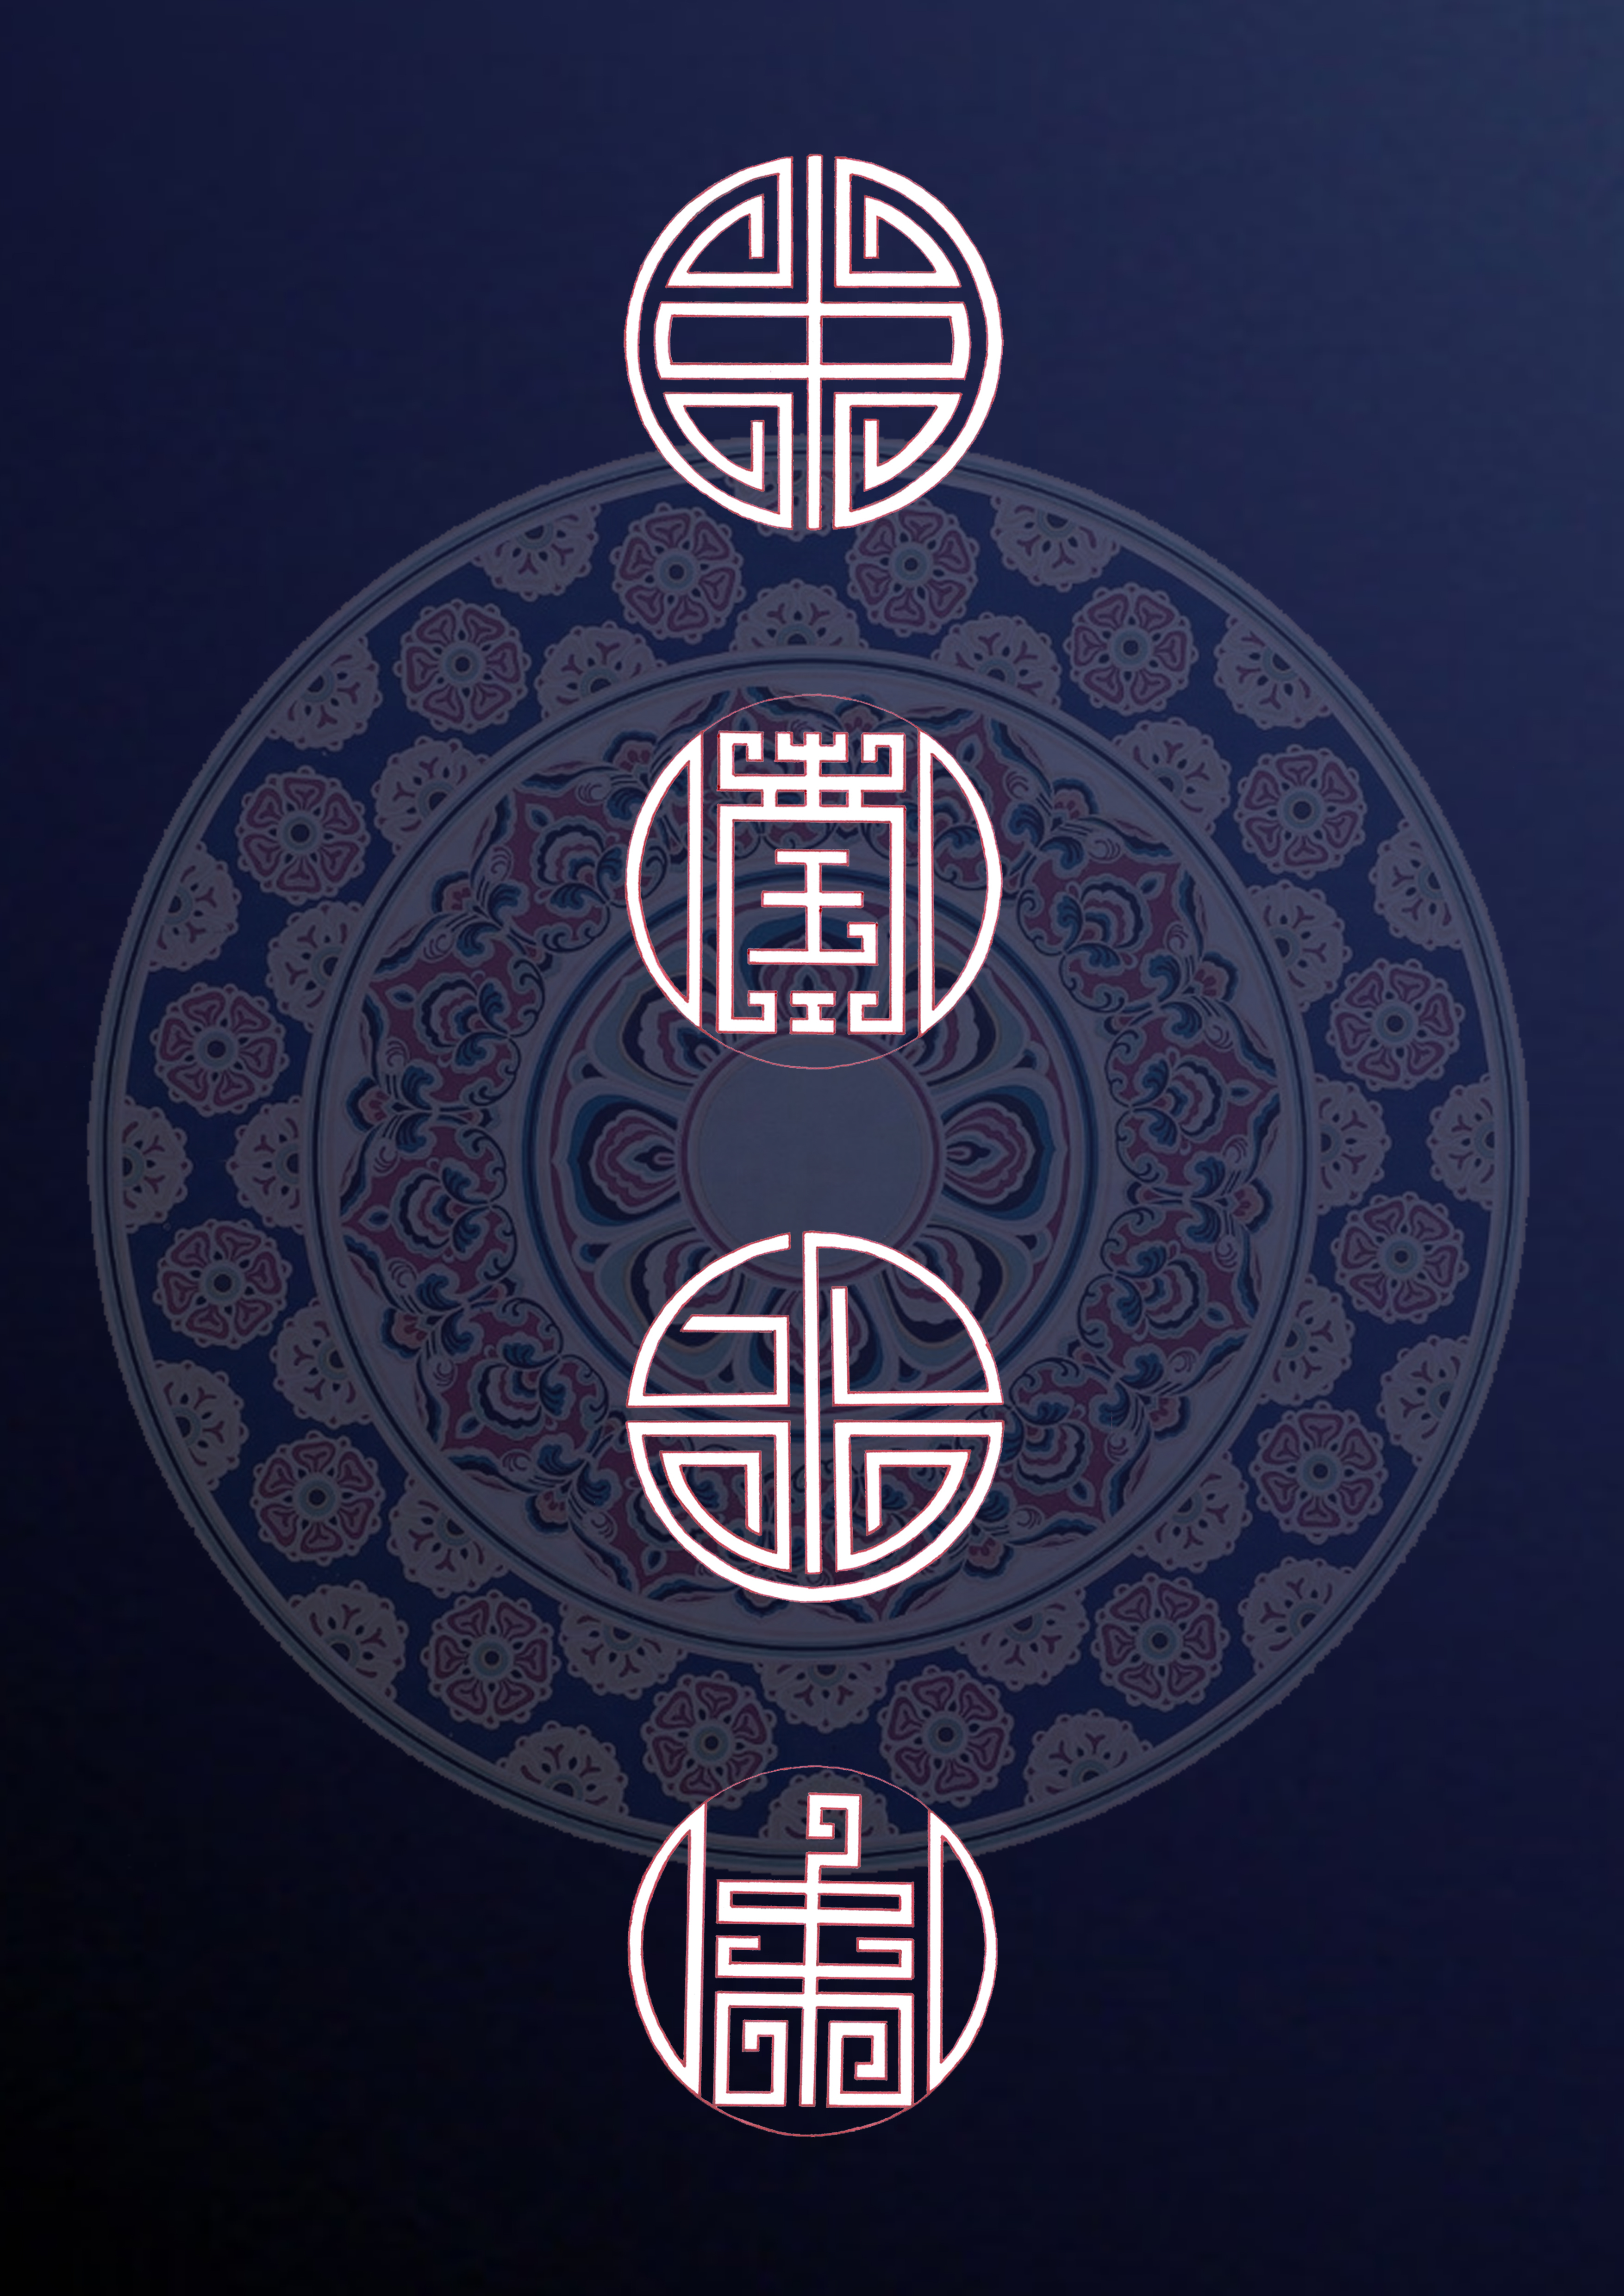 以代表中国元素的图形为原型,将字体进行